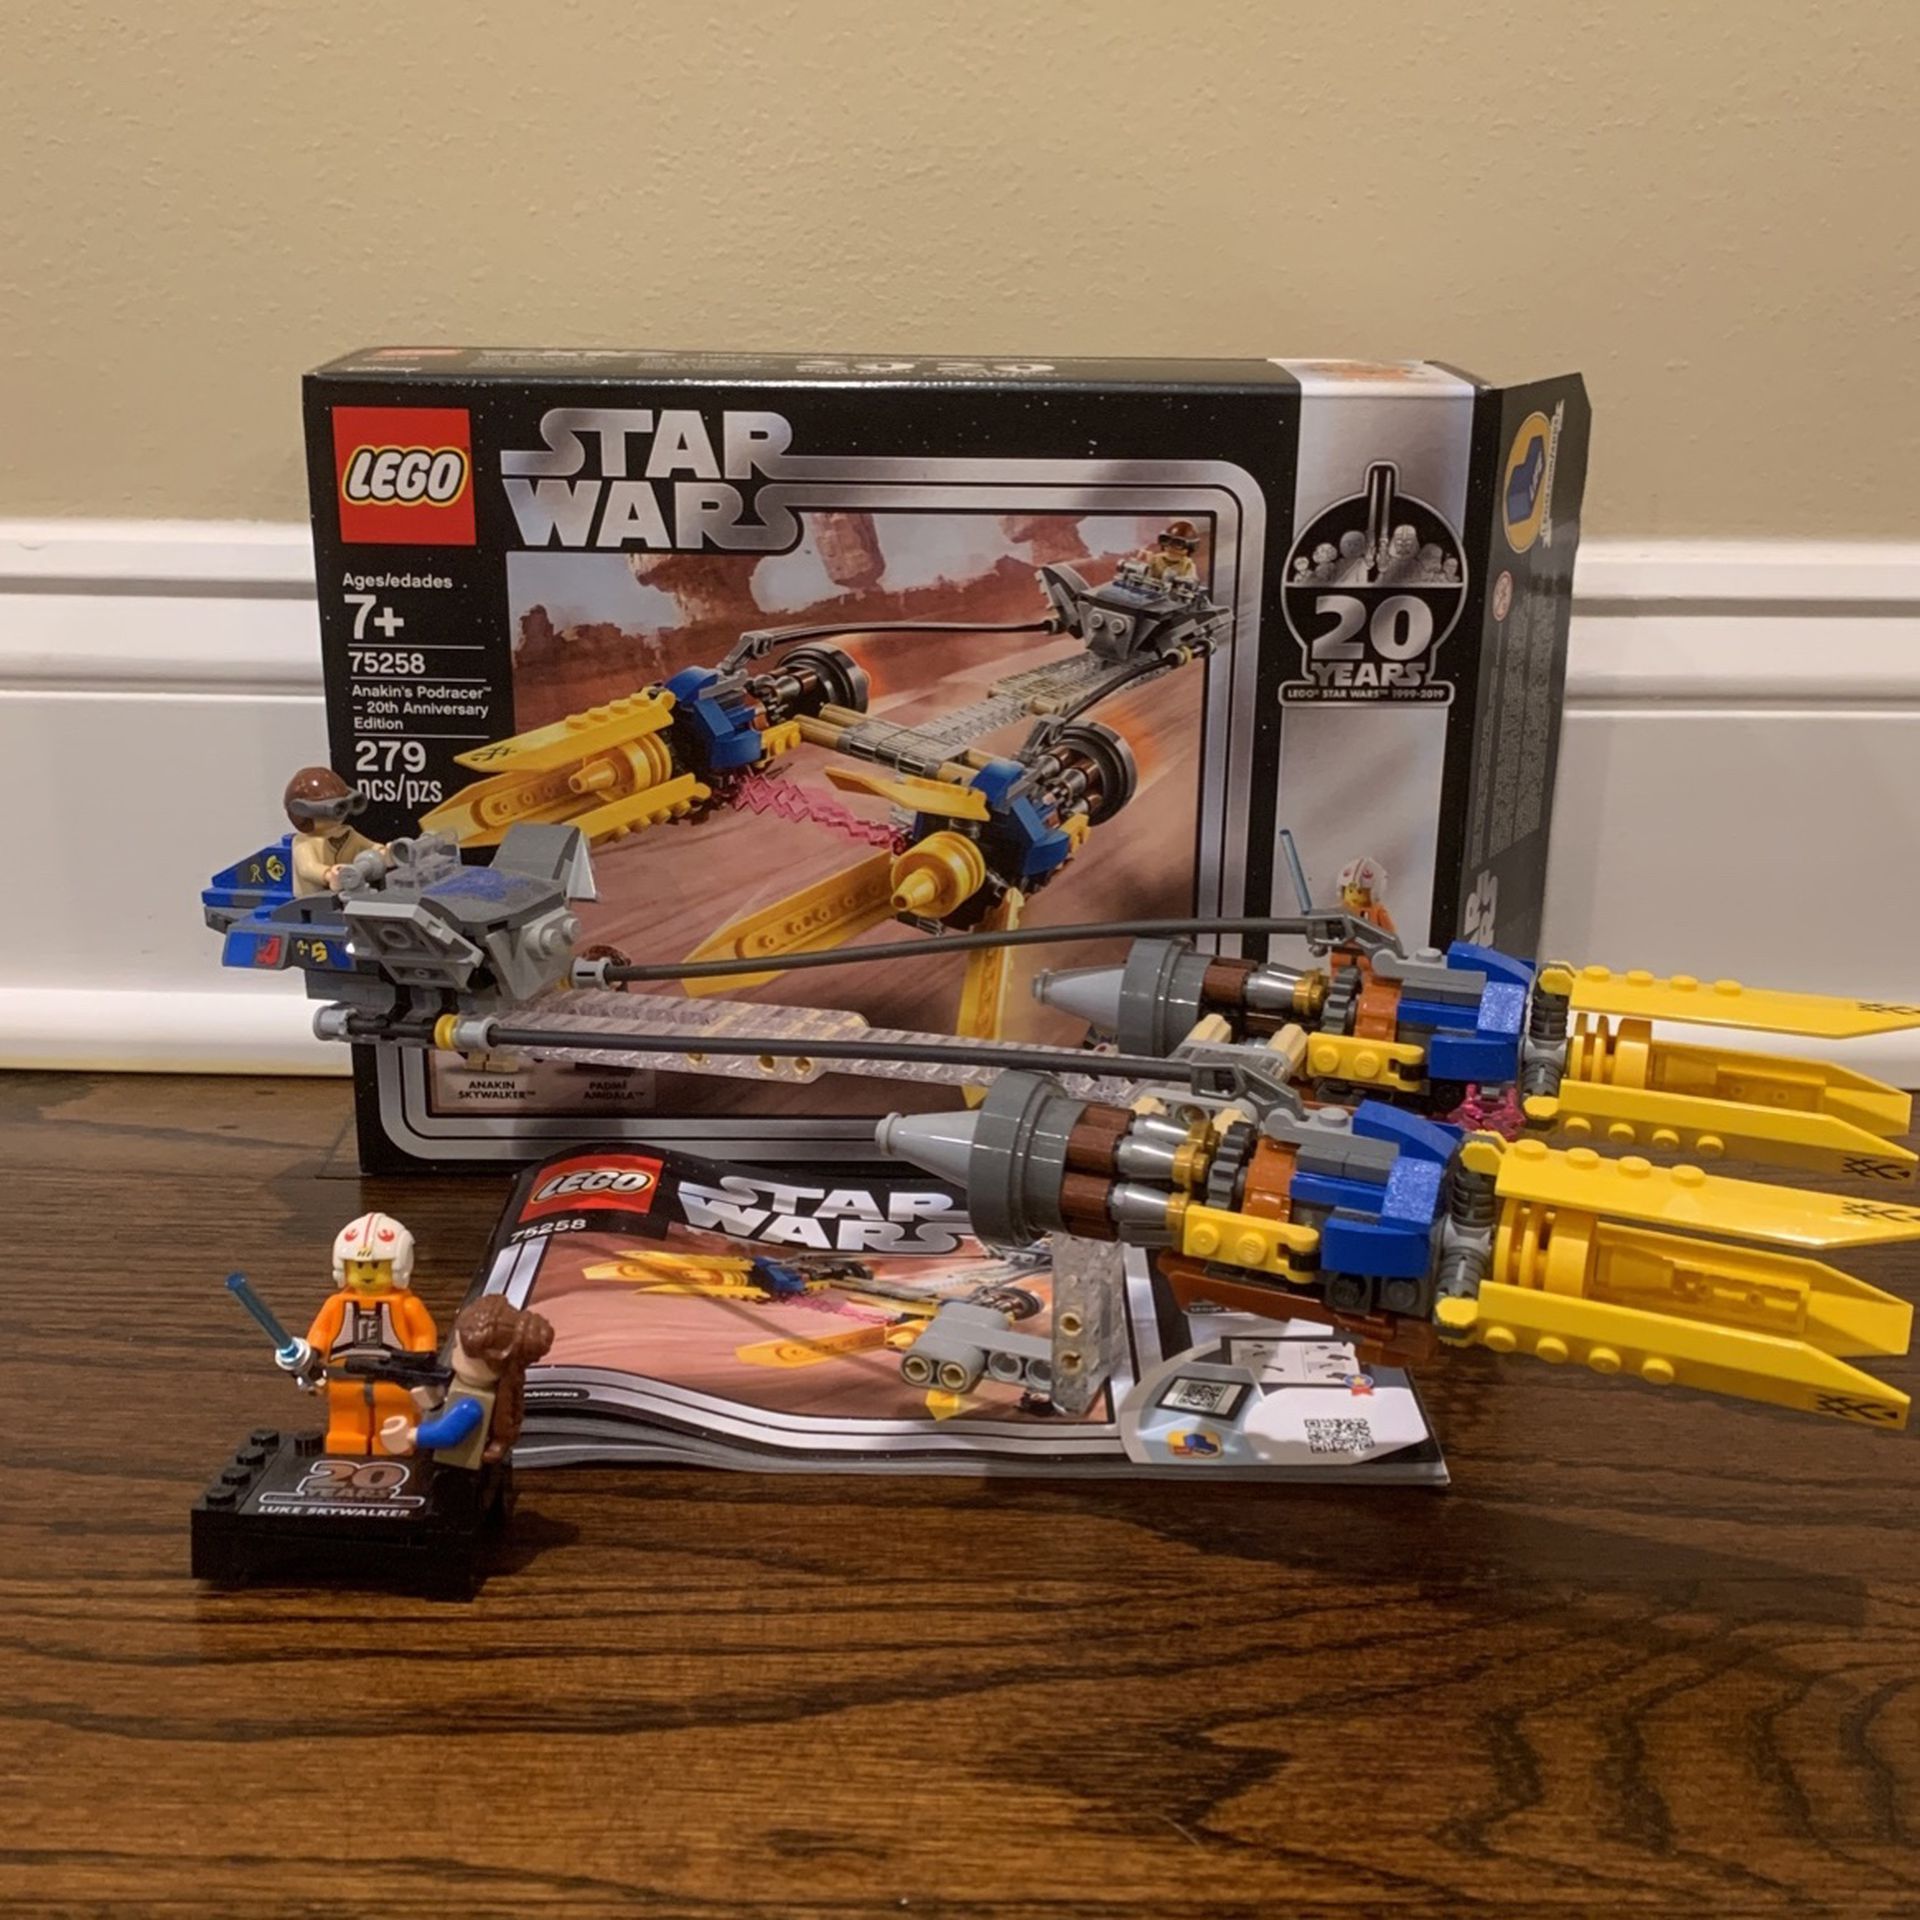 Lego Star Wars (75258) Anakins Podracer